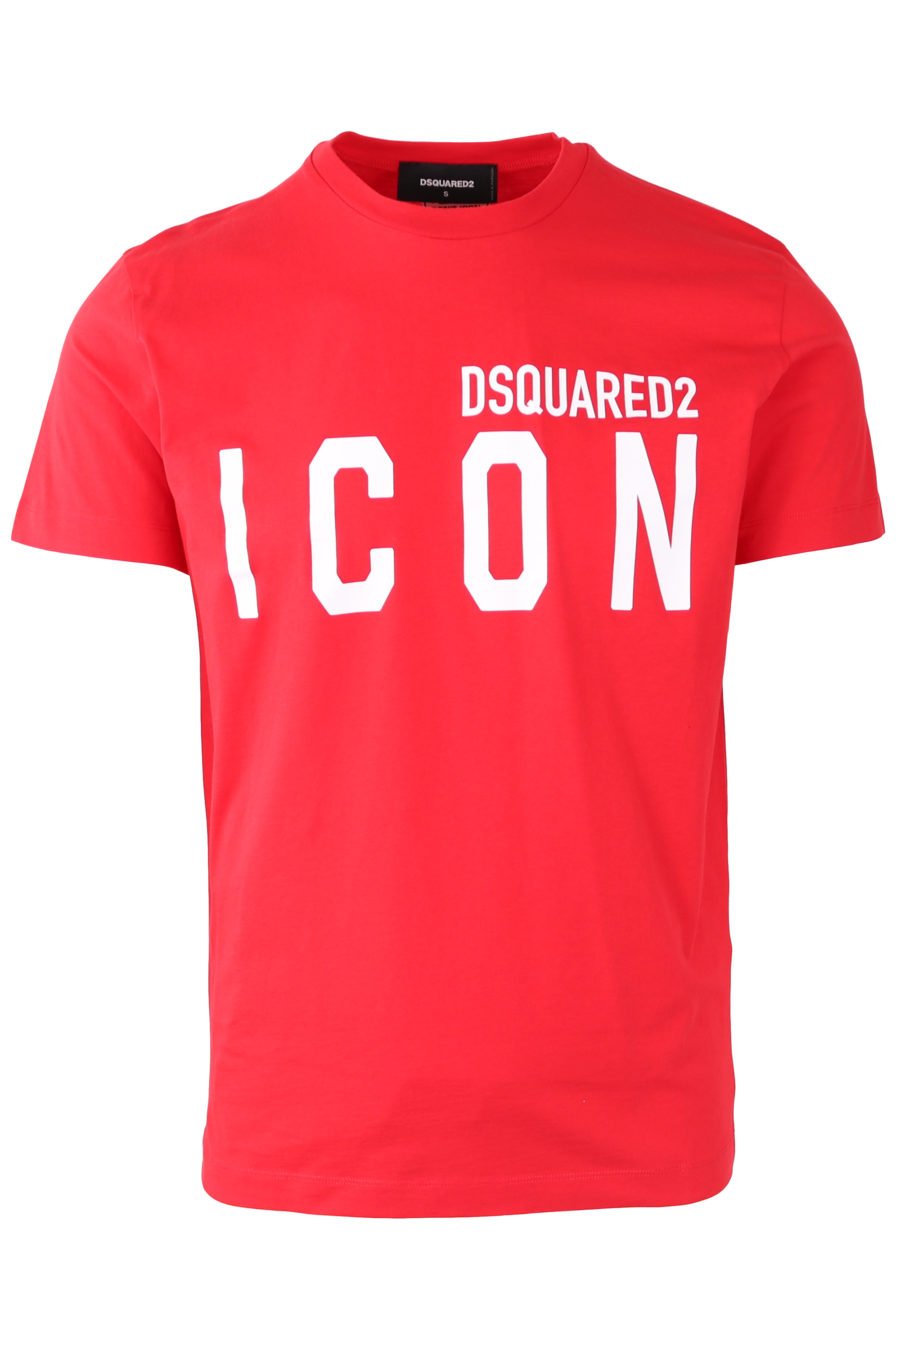 Camiseta roja con logotipo "Icon" - 6cec91c094e3497f40b0032c6a5f7972b235c13f